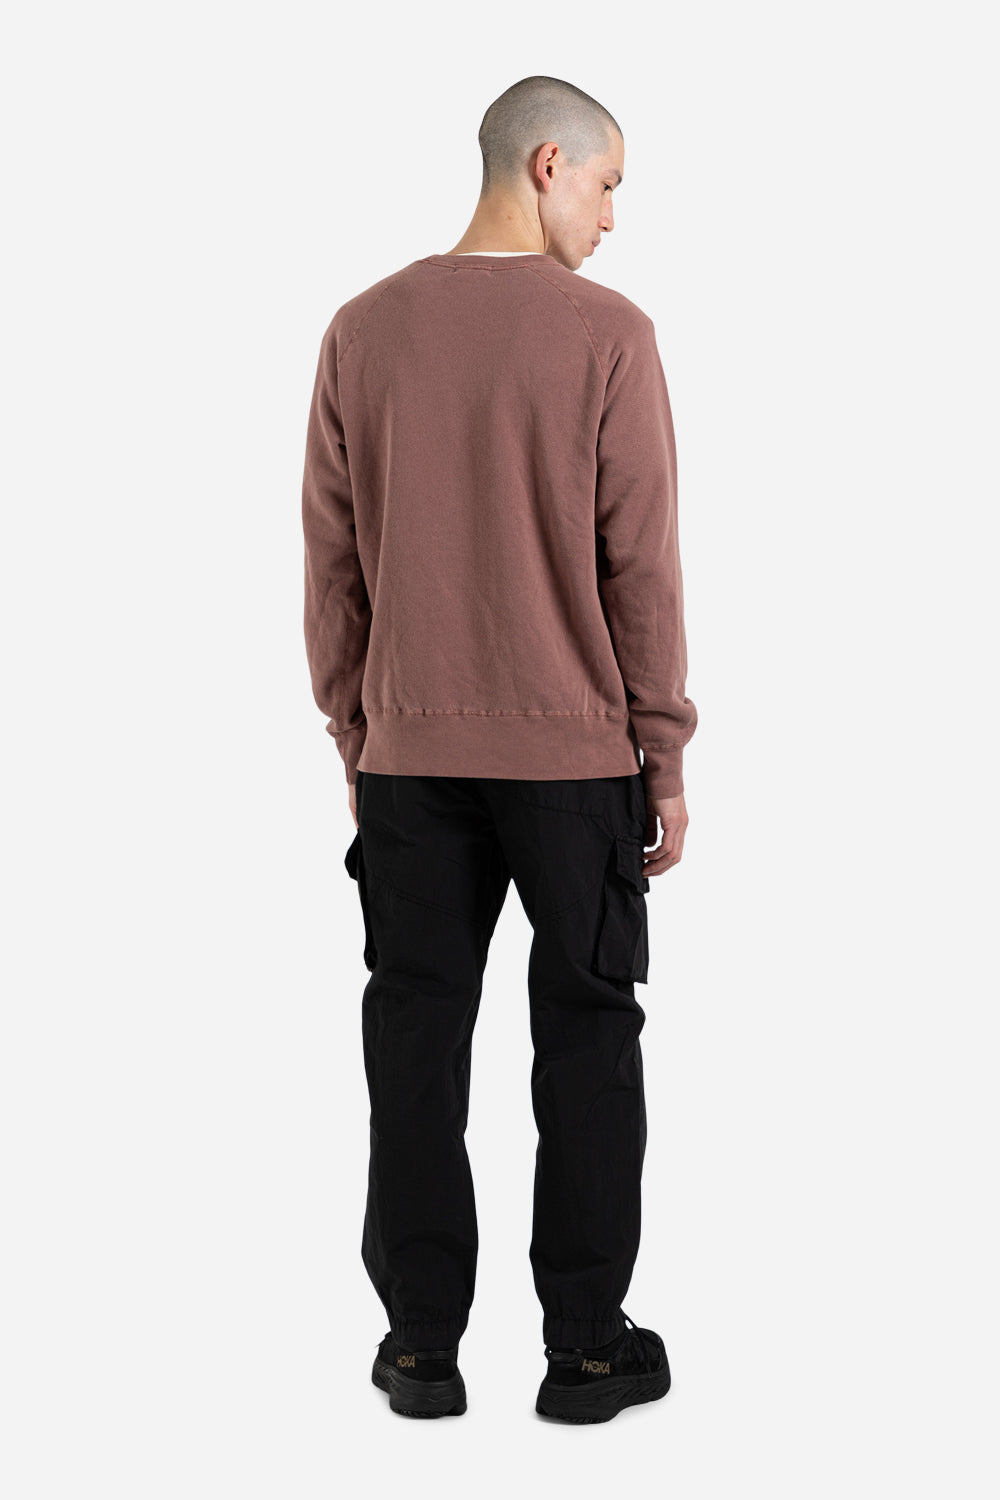 velva-sheen-freedom-sweater-coca-brown